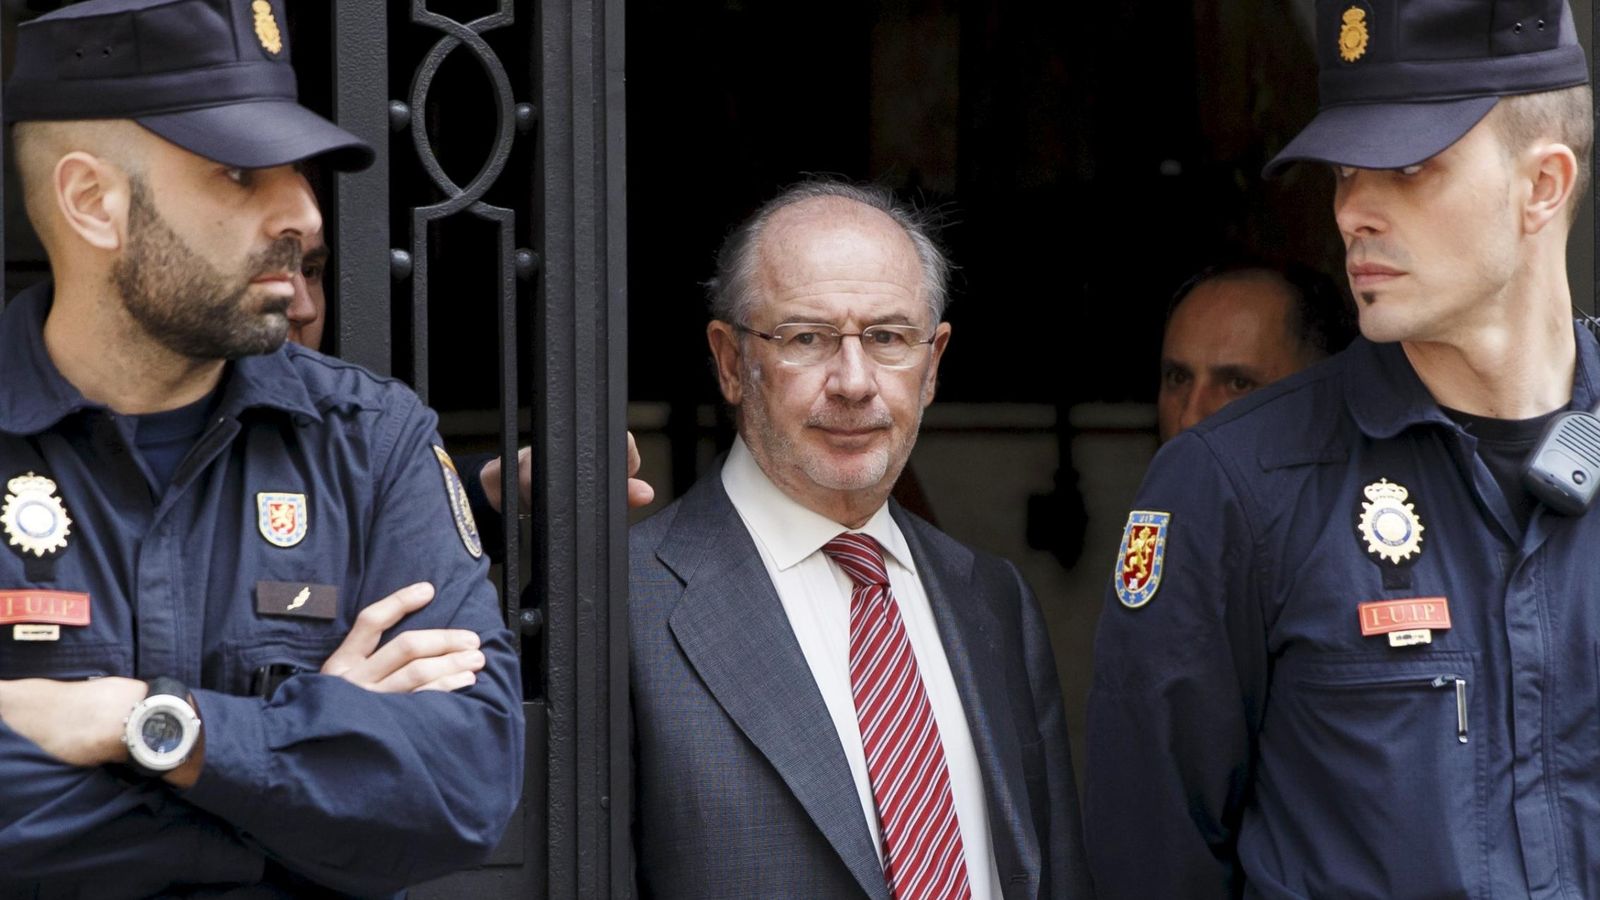 Foto: El expresidente de Bankia, Rodrigo Rato. (Reuters)